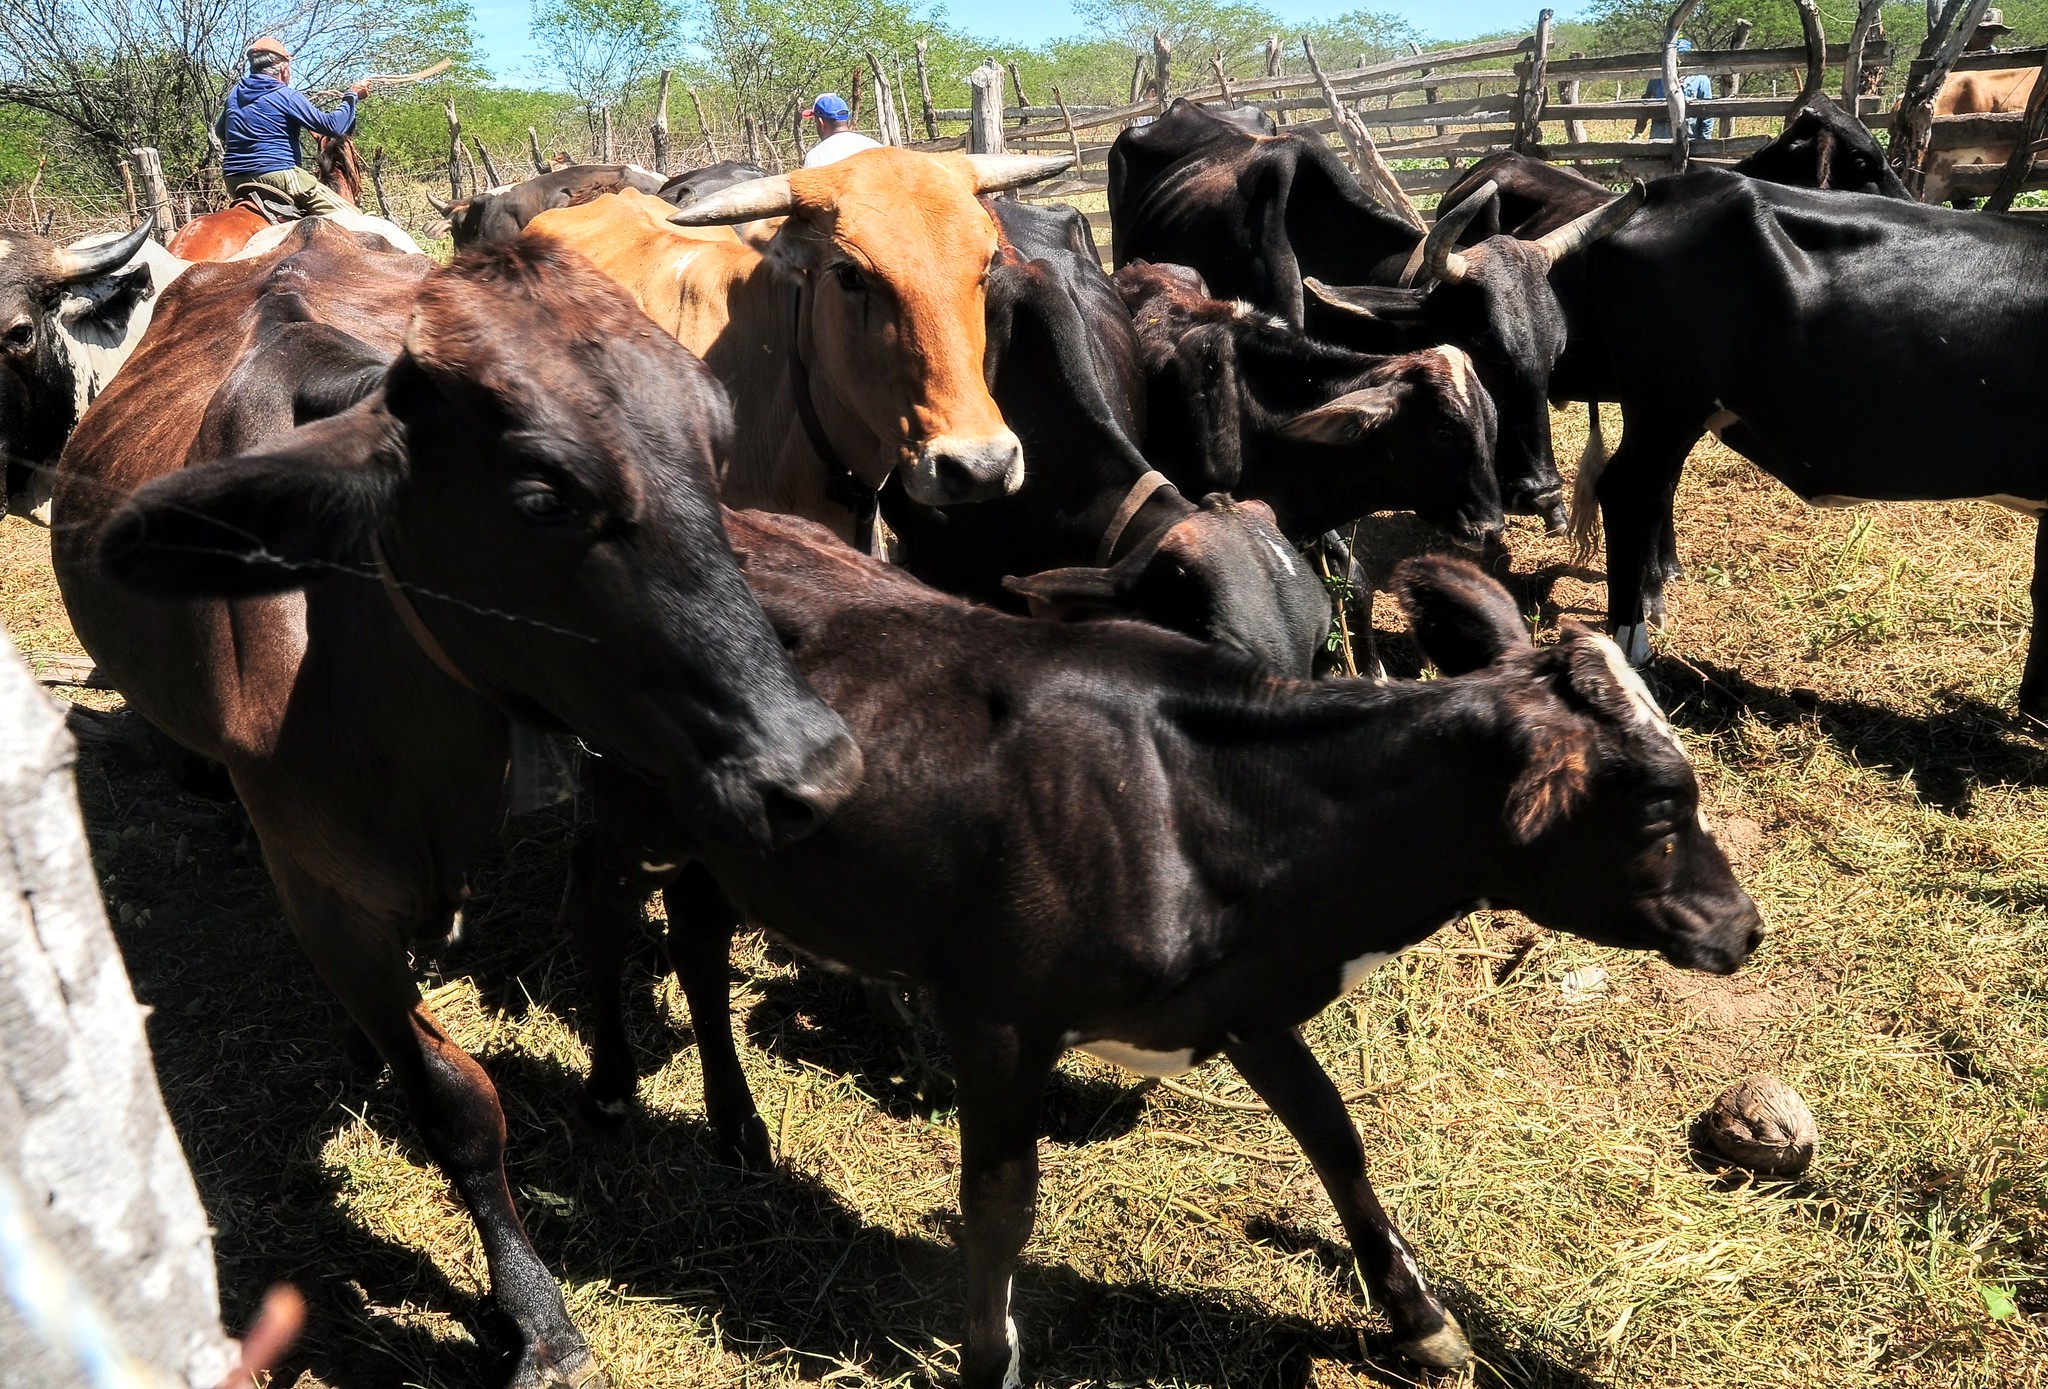 Programa “Mossoró Rural” passará a fornecer inseminação artificial em bovinos